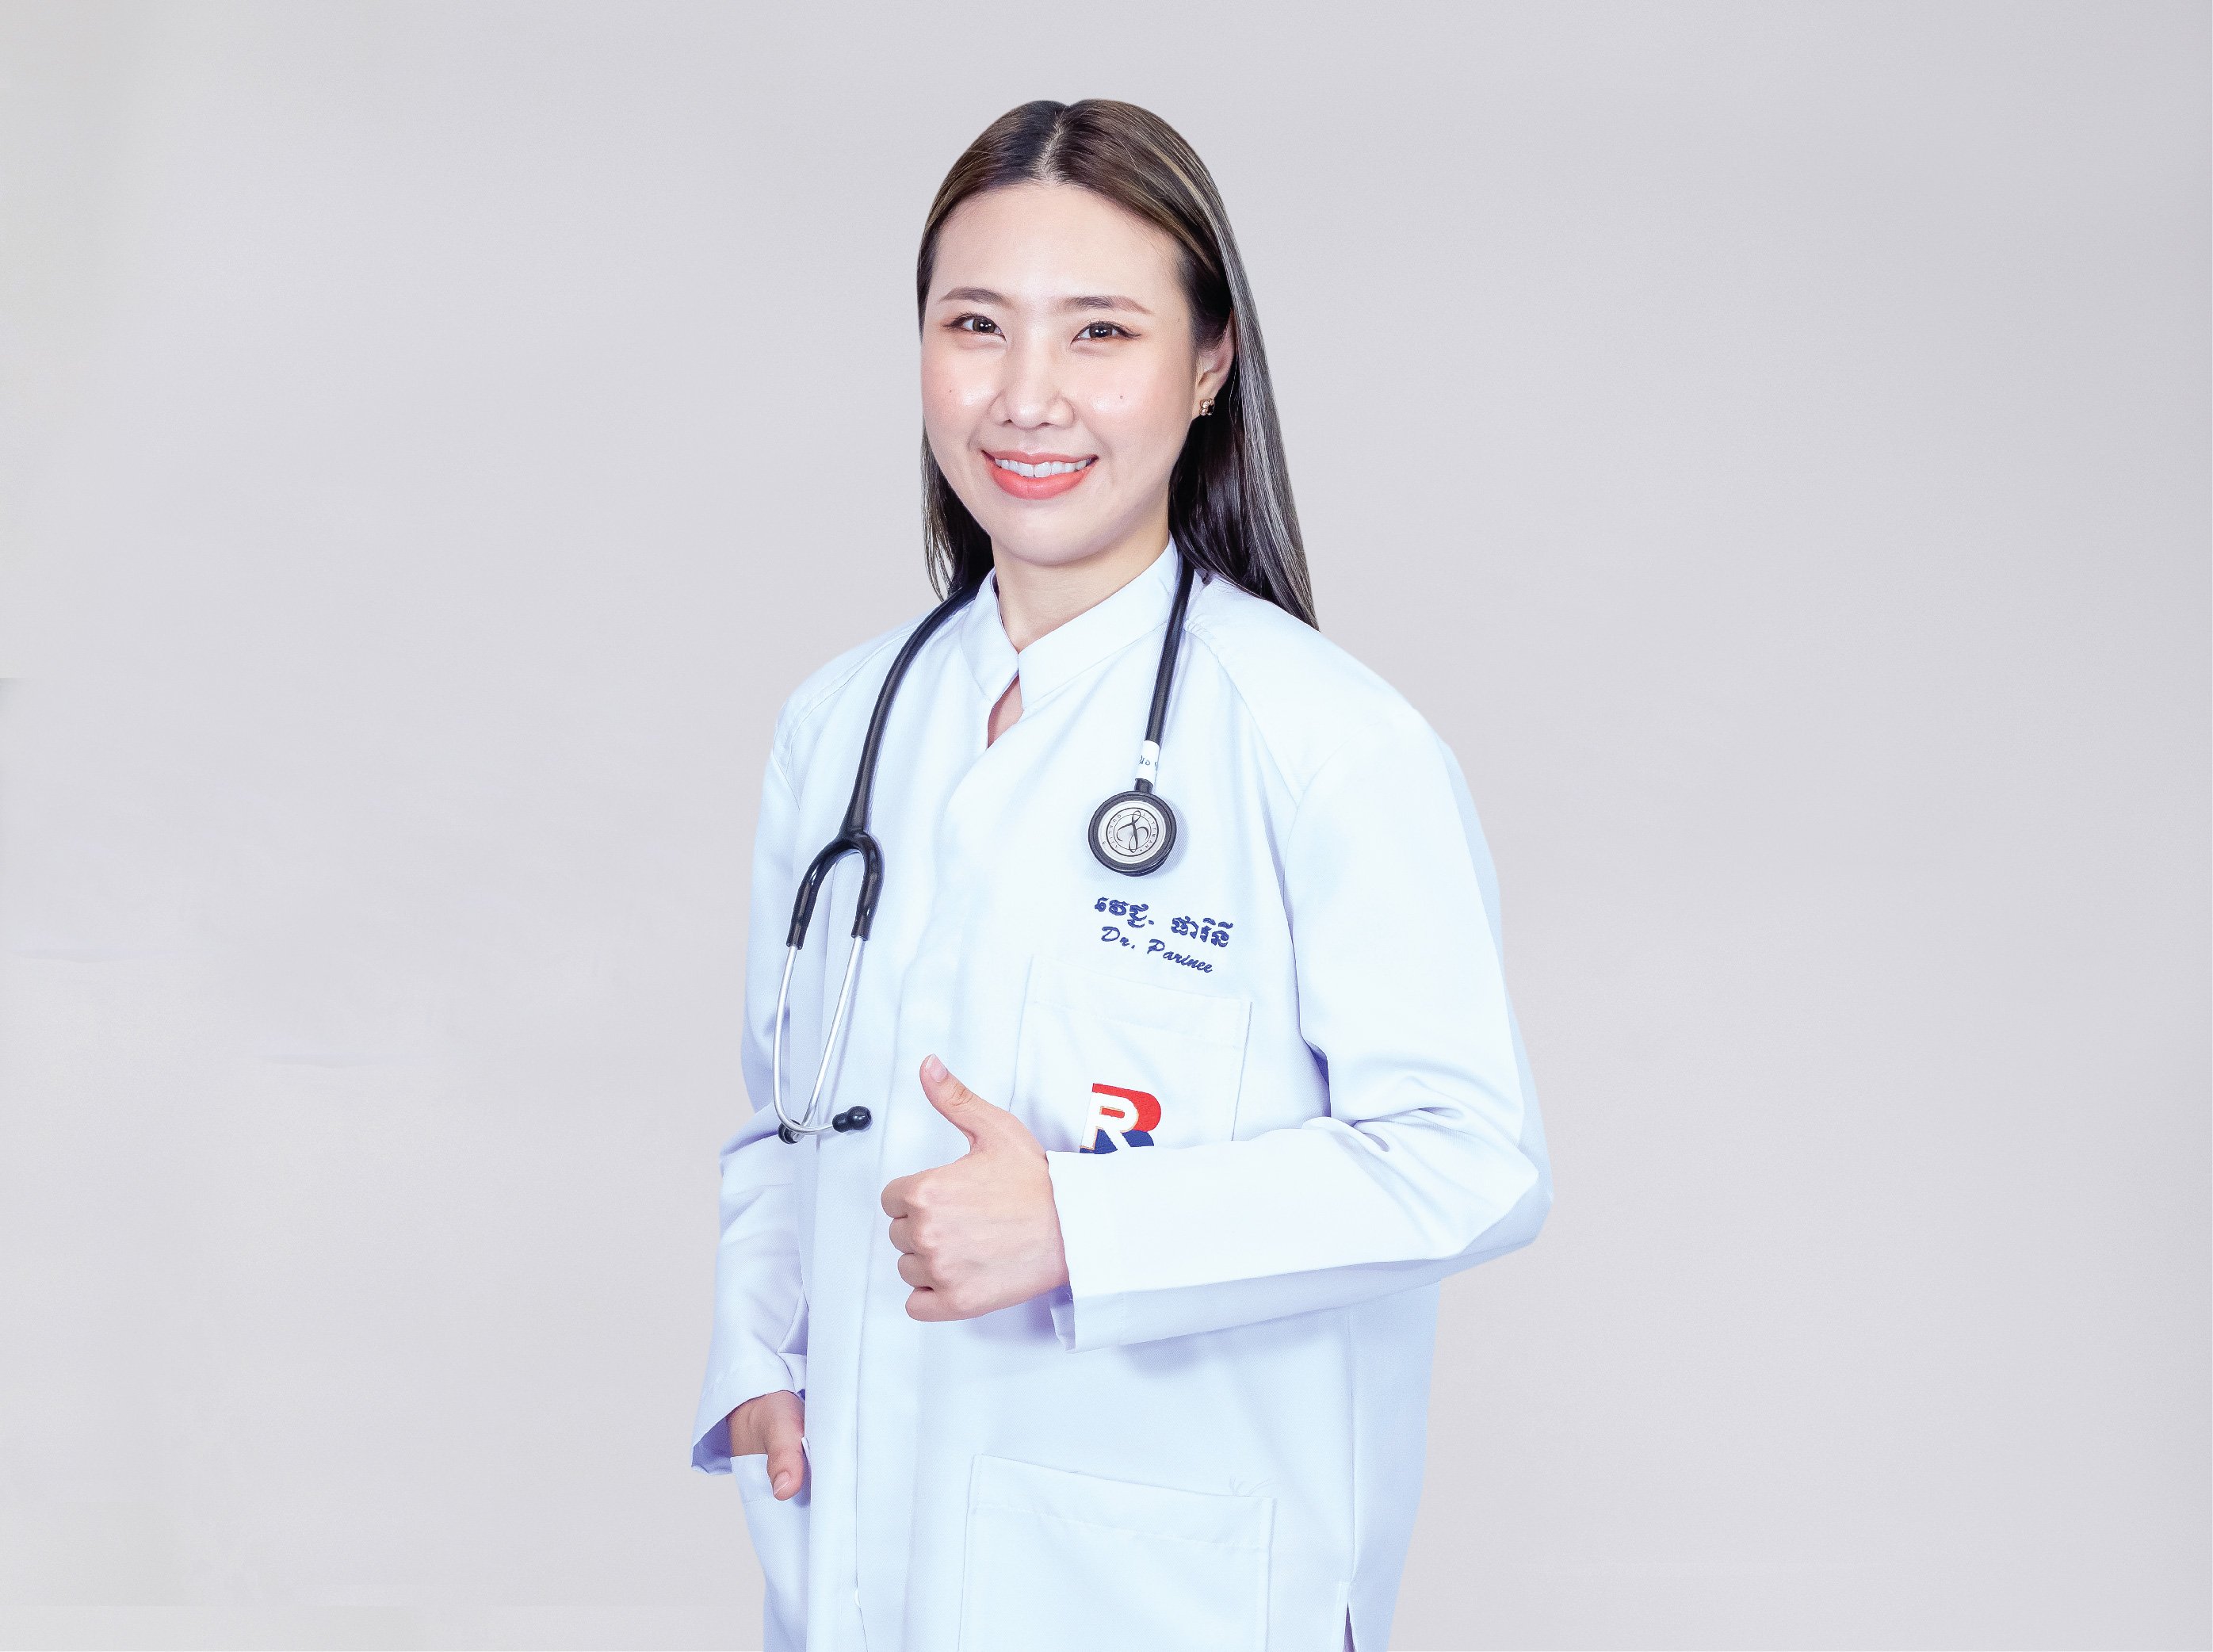 Dr. Parinee Tansuriyawong